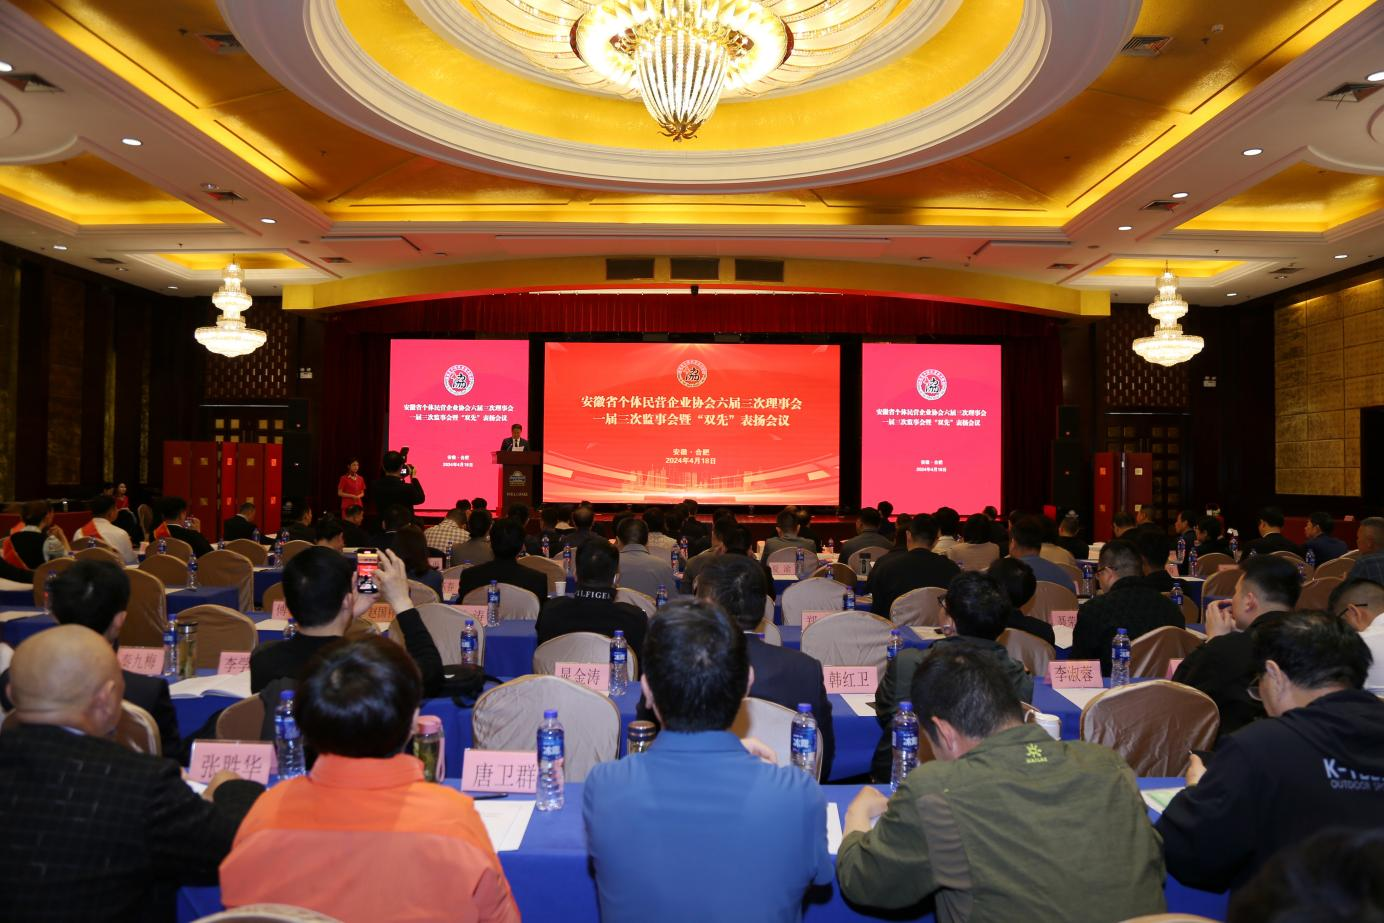 安徽省个体民营企业协会六届三次理事会一届三次监事会暨“双先”表扬会议在合肥召开